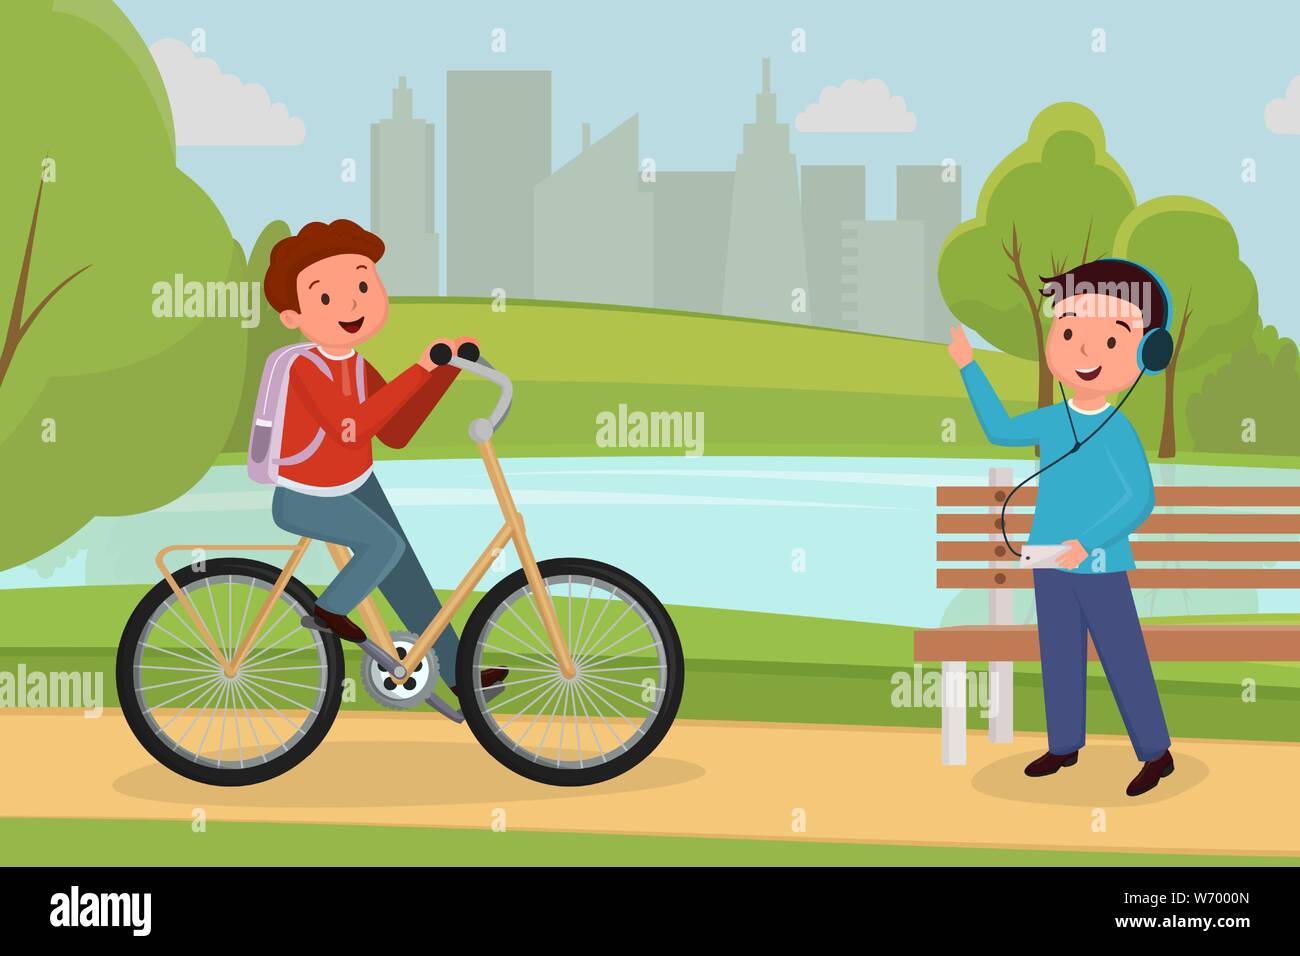 Reunión de amigos en el parque urbano de la ilustración. Boy montando  bicicleta, teen en auriculares escuchando música en parque recreativo  personajes de dibujos animados. La gente la actividad al aire libre,